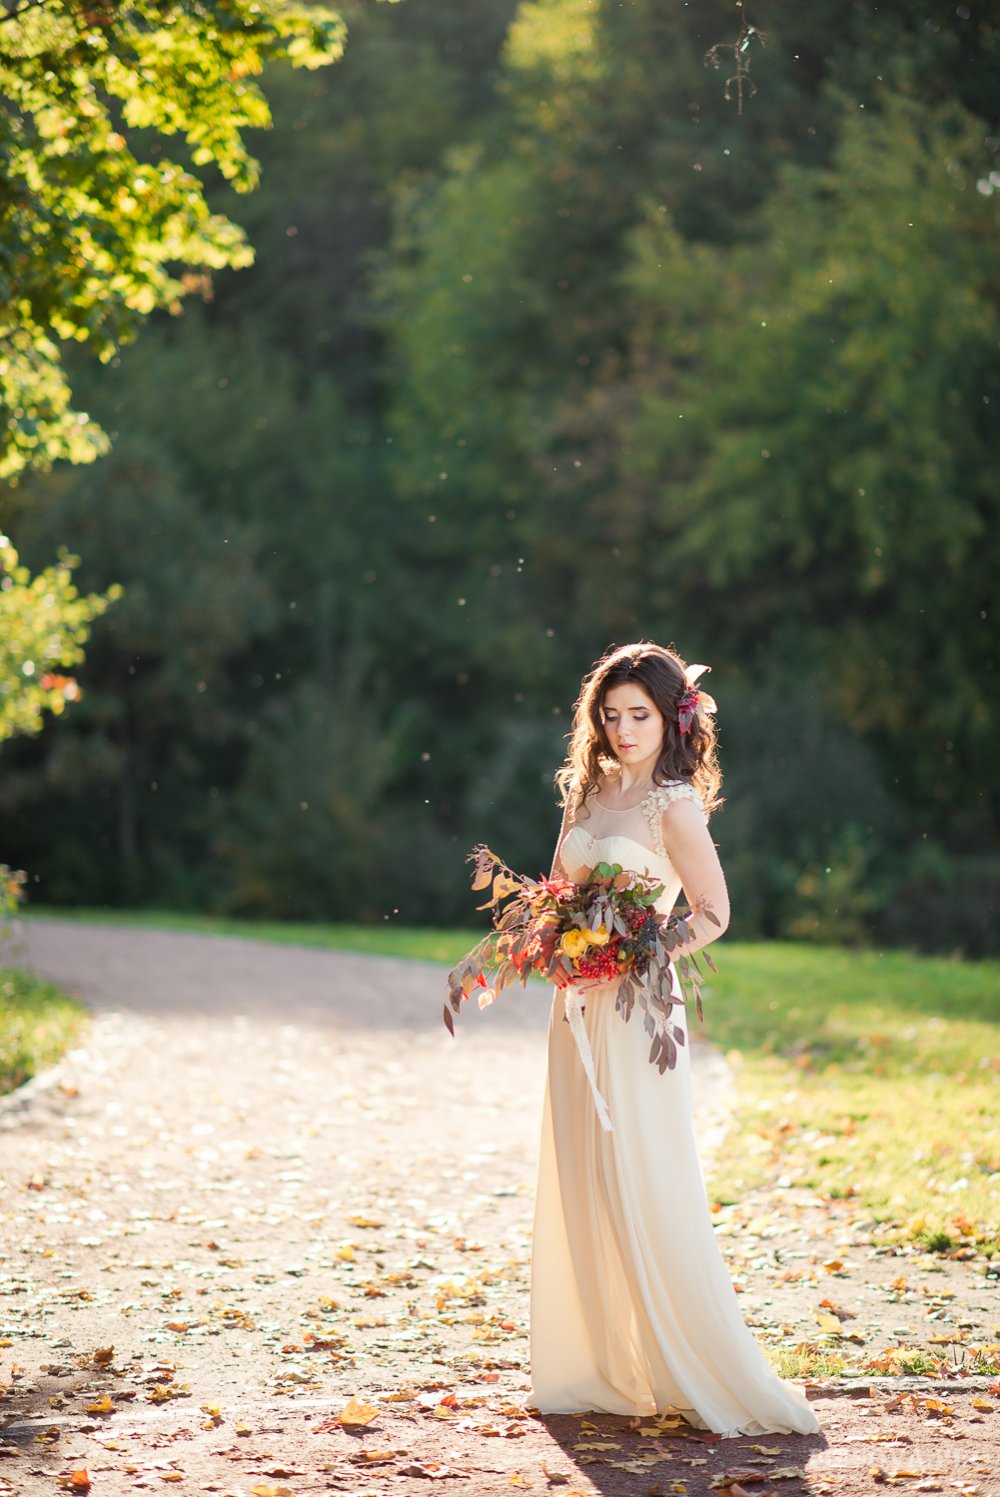 Осенний образ невесты в стиле fine art